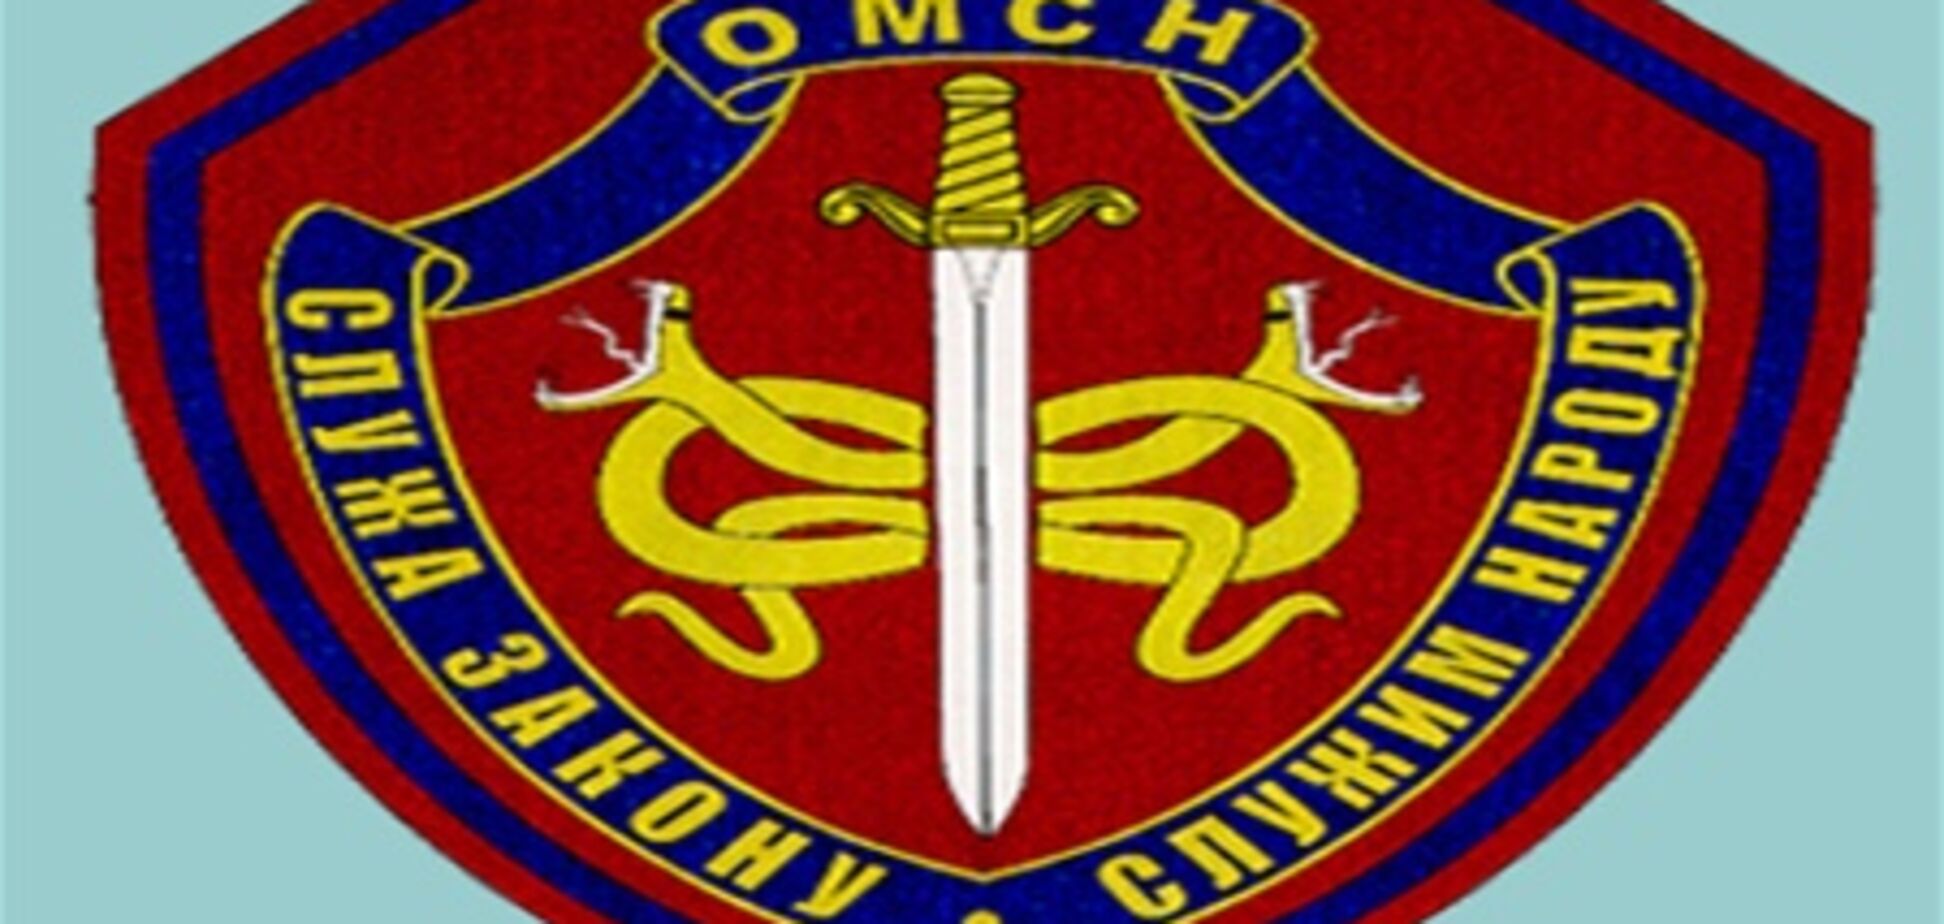 Нарукавний знак співробітників загонів міліції спецназу МВС Росії - копія знака солдатів SS